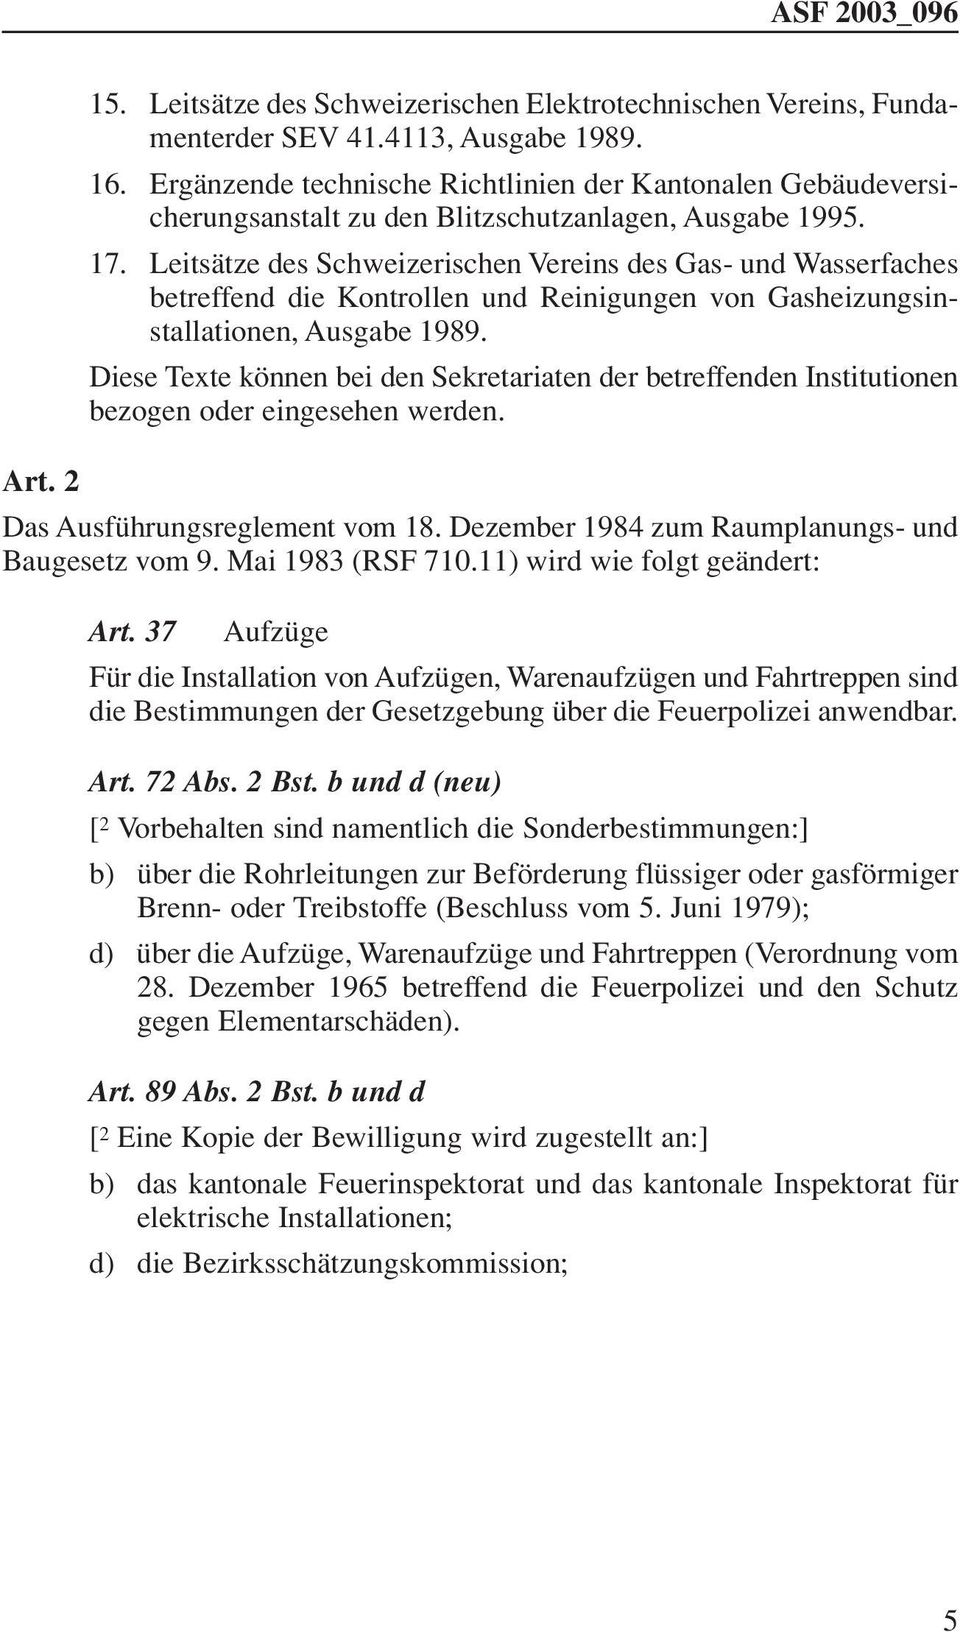 Leitsätze des Schweizerischen Vereins des Gas- und Wasserfaches betreffend die Kontrollen und Reinigungen von Gasheizungsinstallationen, Ausgabe 1989.